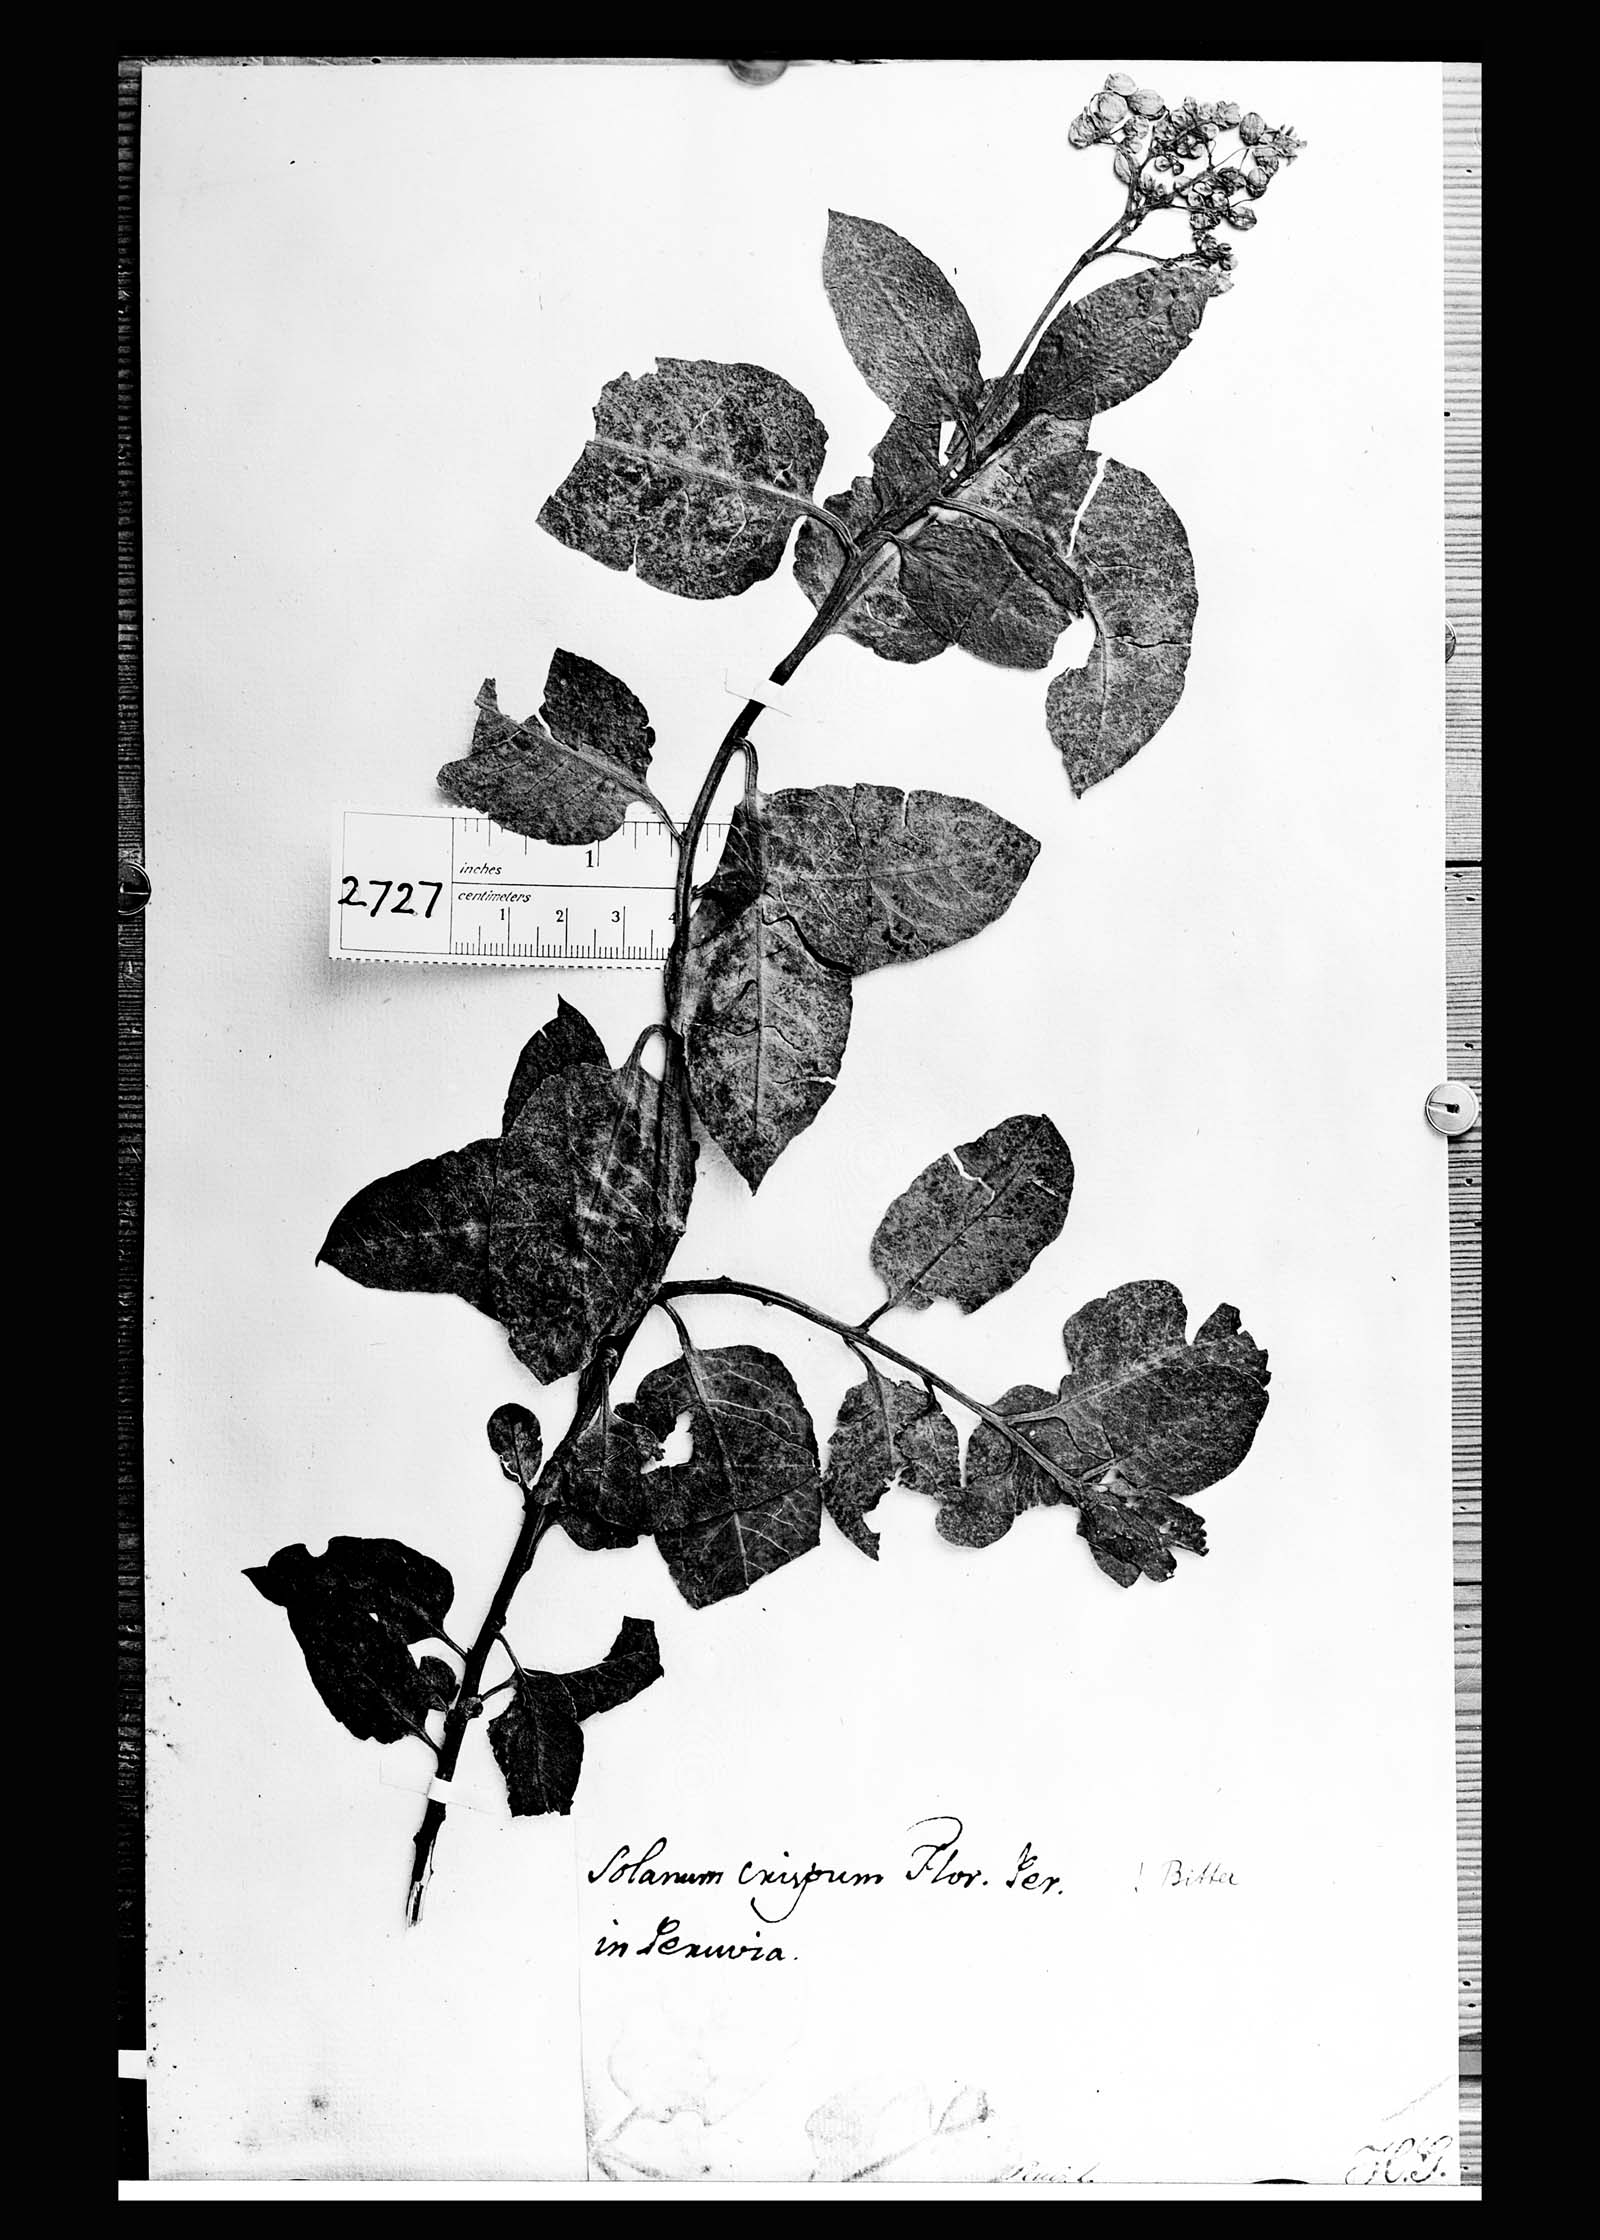 Solanum crispum image